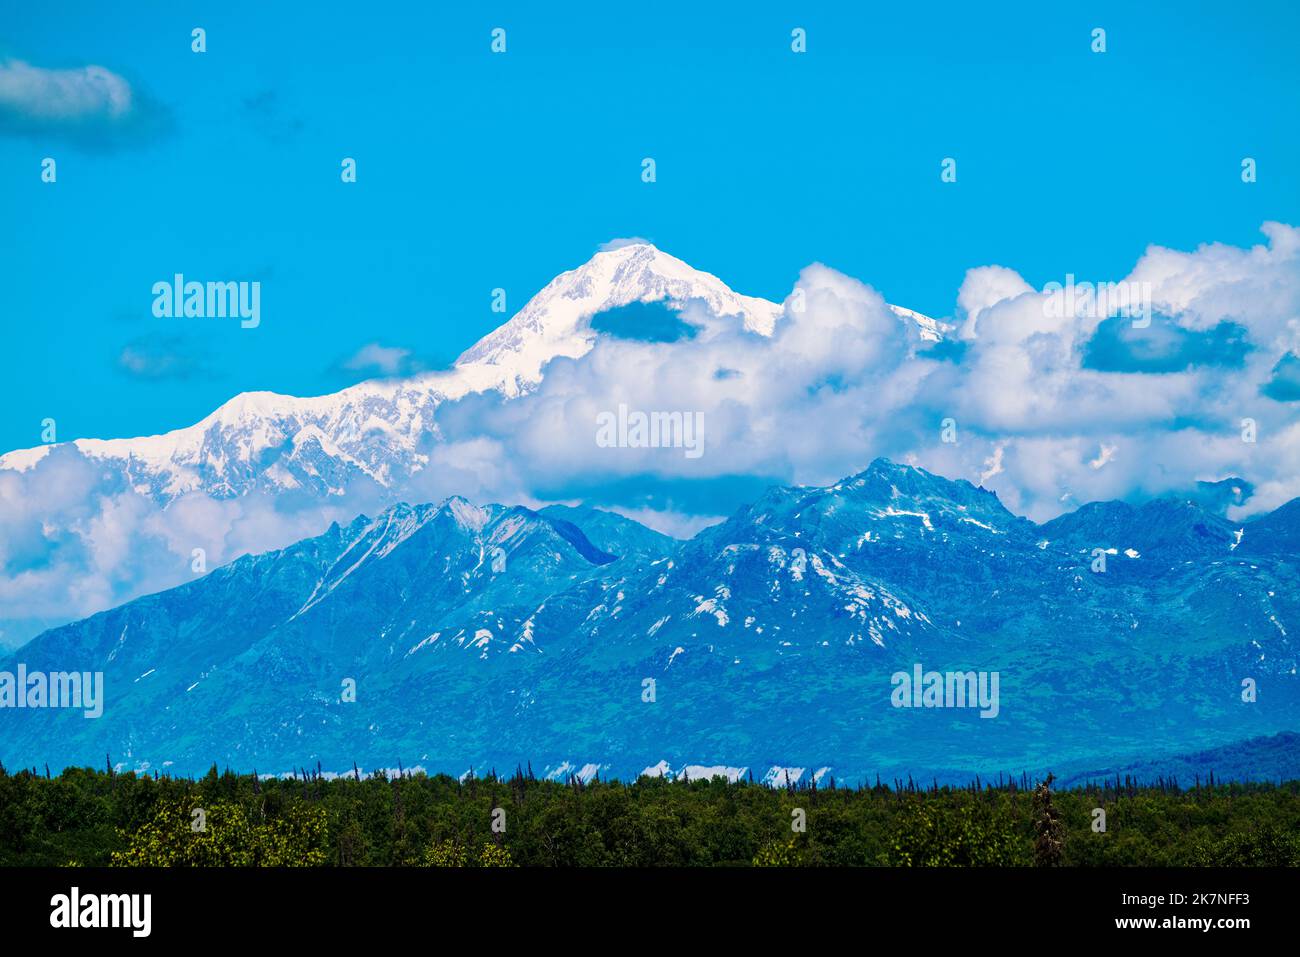 Vue au nord de l'Alaska Range et du Denali Mountain (Mt. McKinley) depuis le point de vue de 'Denali Viewpoint South' au point milliaire 135 de la George Parks Highway 3, Alaska, États-Unis Banque D'Images